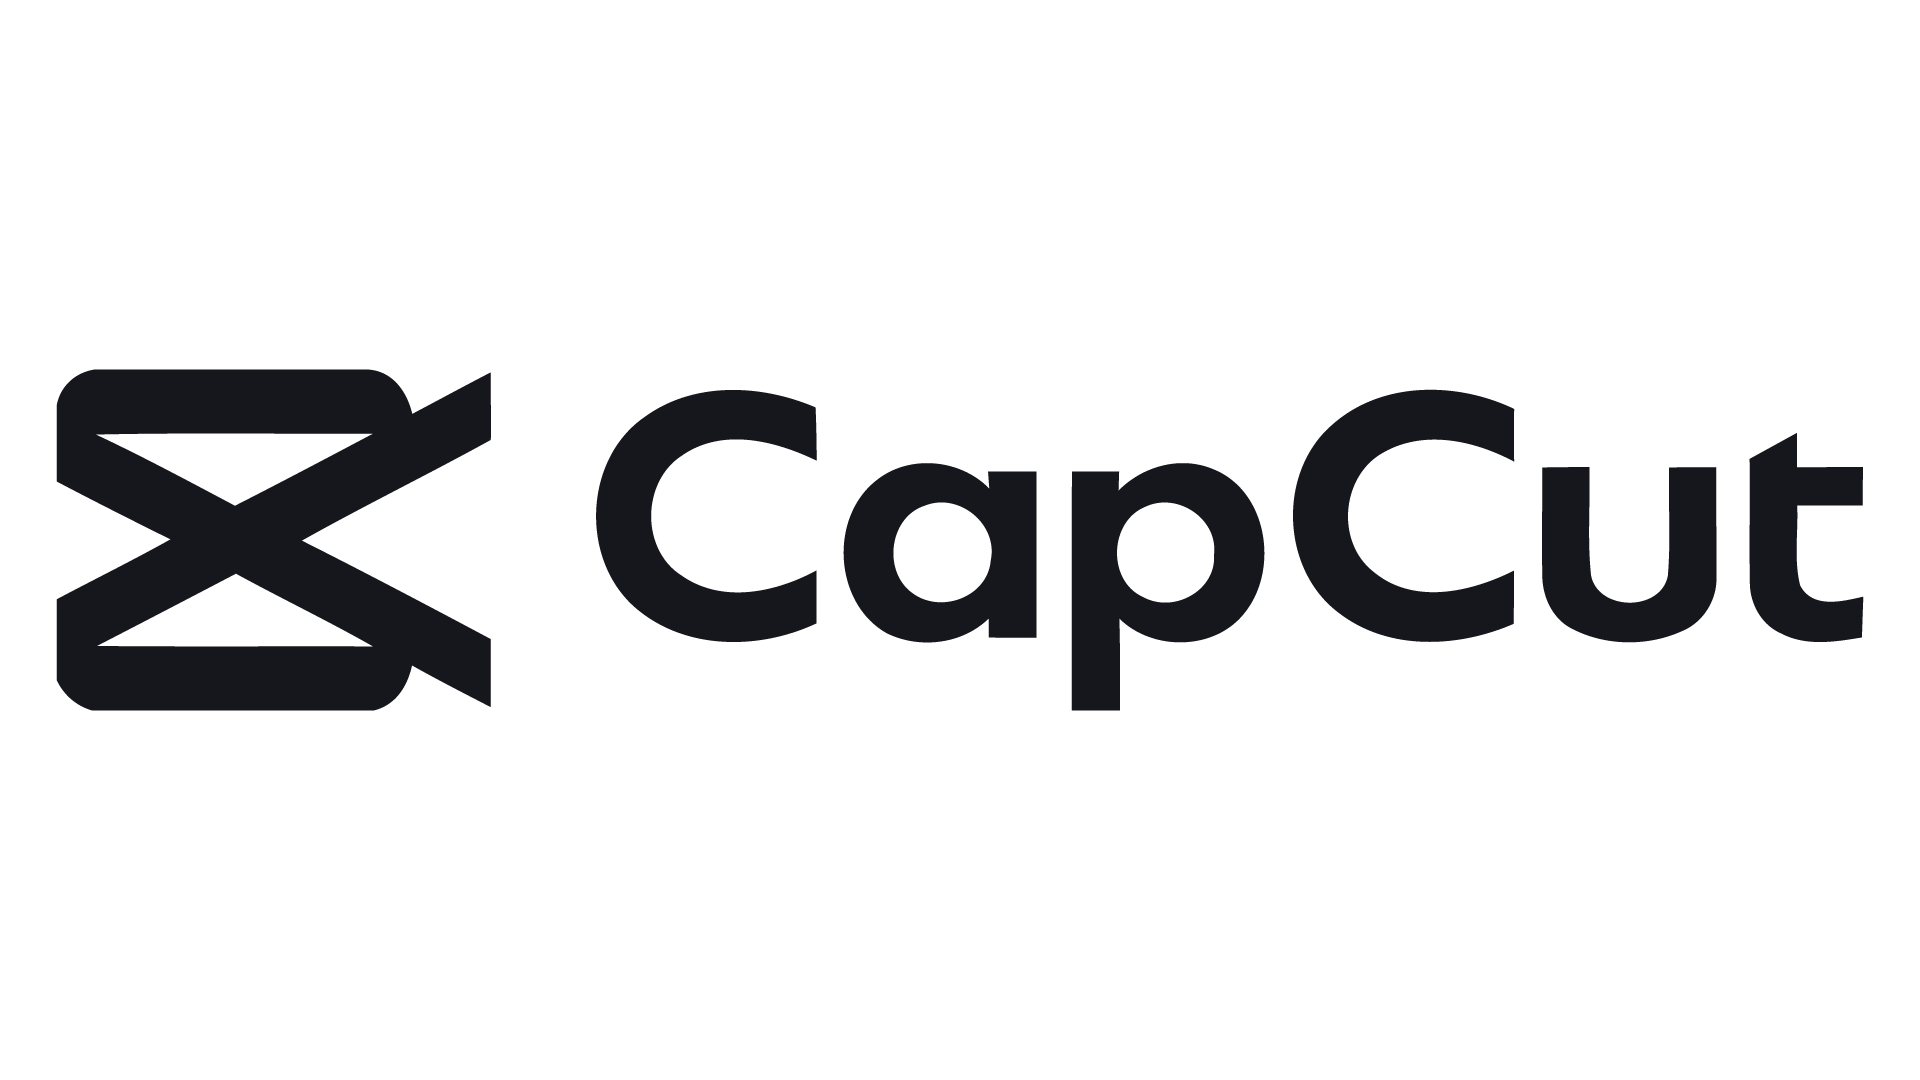 Me capcut. CAPCUT логотип. Значле CAPCUT. Приложение CAPCUT. Значок CAPCUT PNG.